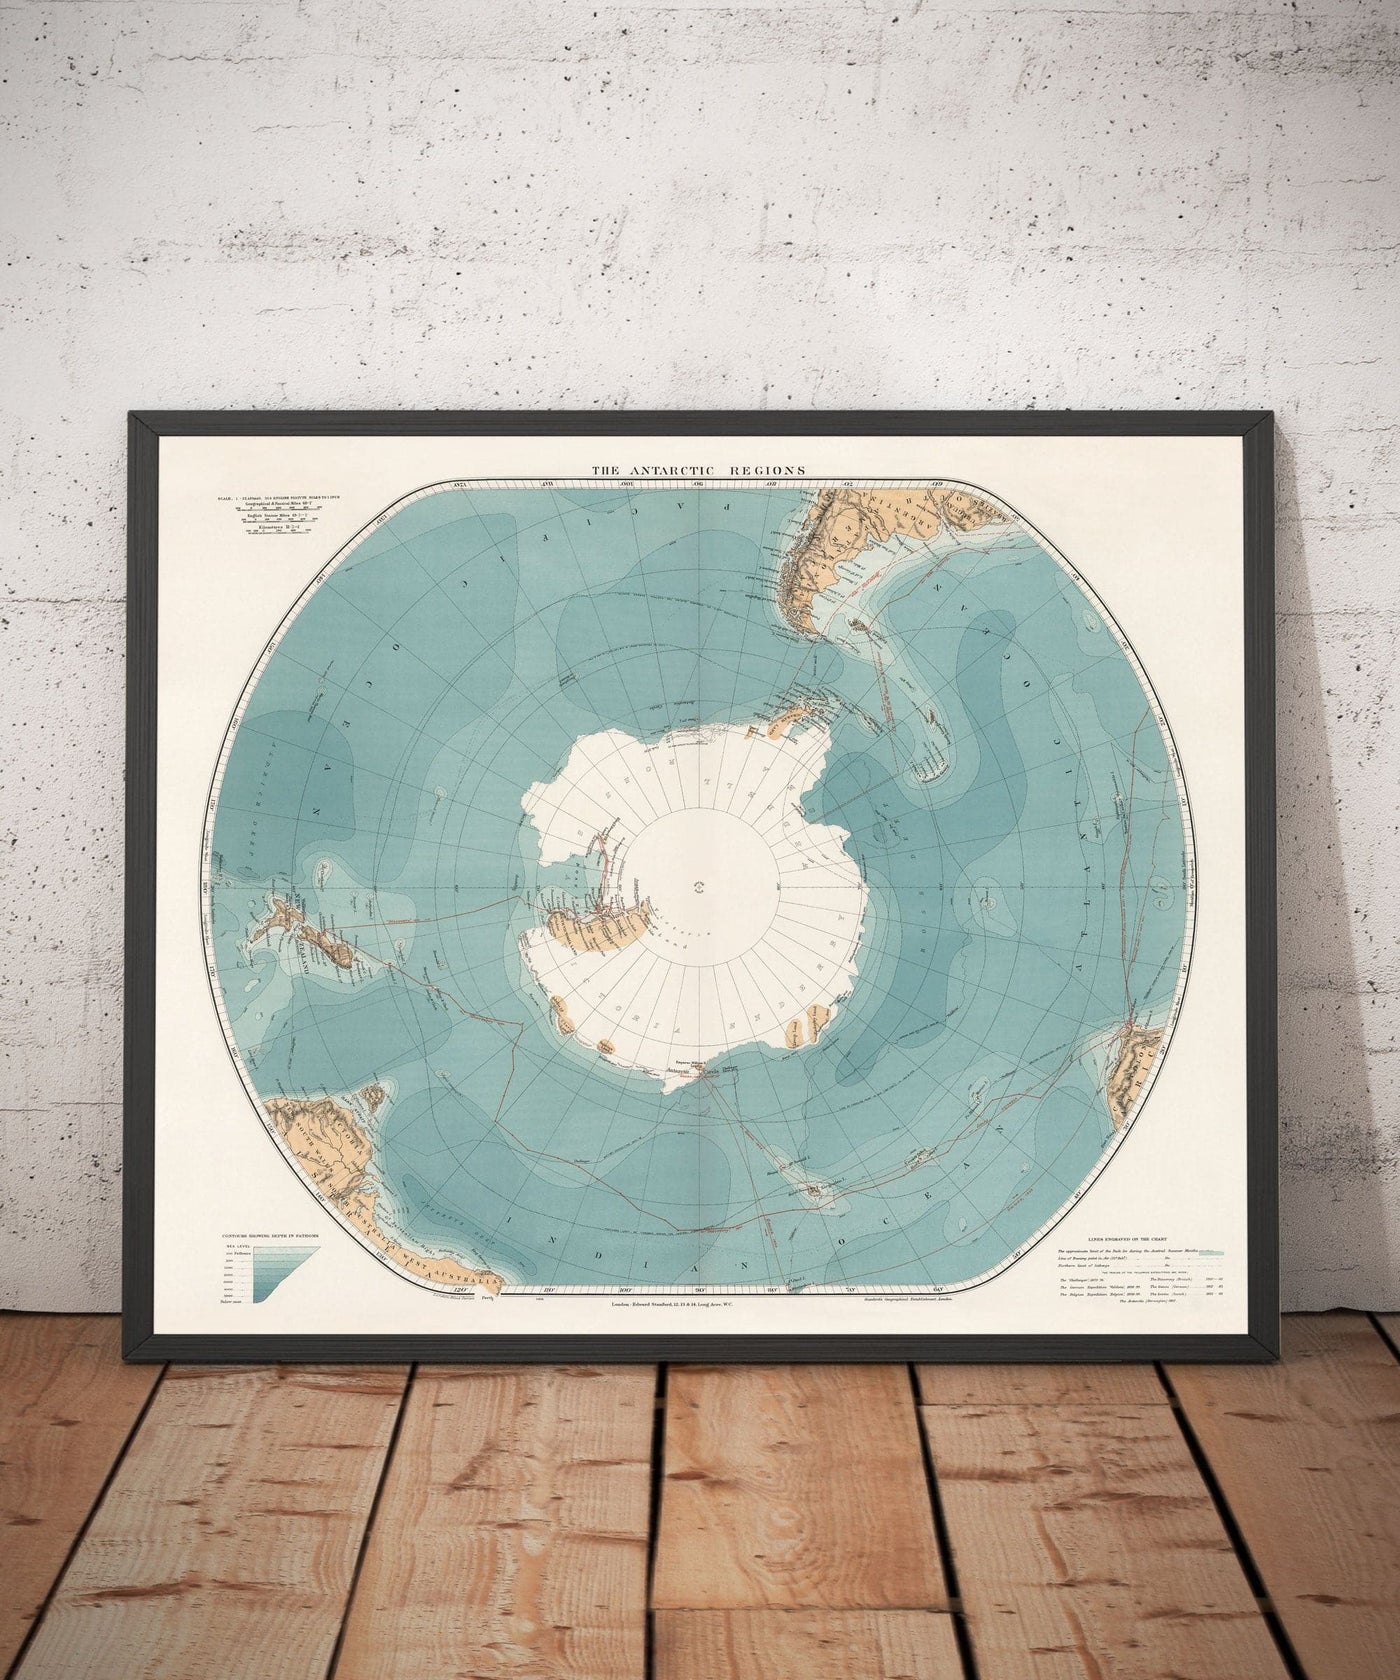 Alte Antarktis Südpol Karte 1904 von Stanford - Vintage Atlas Explorer Karte der Antarktis